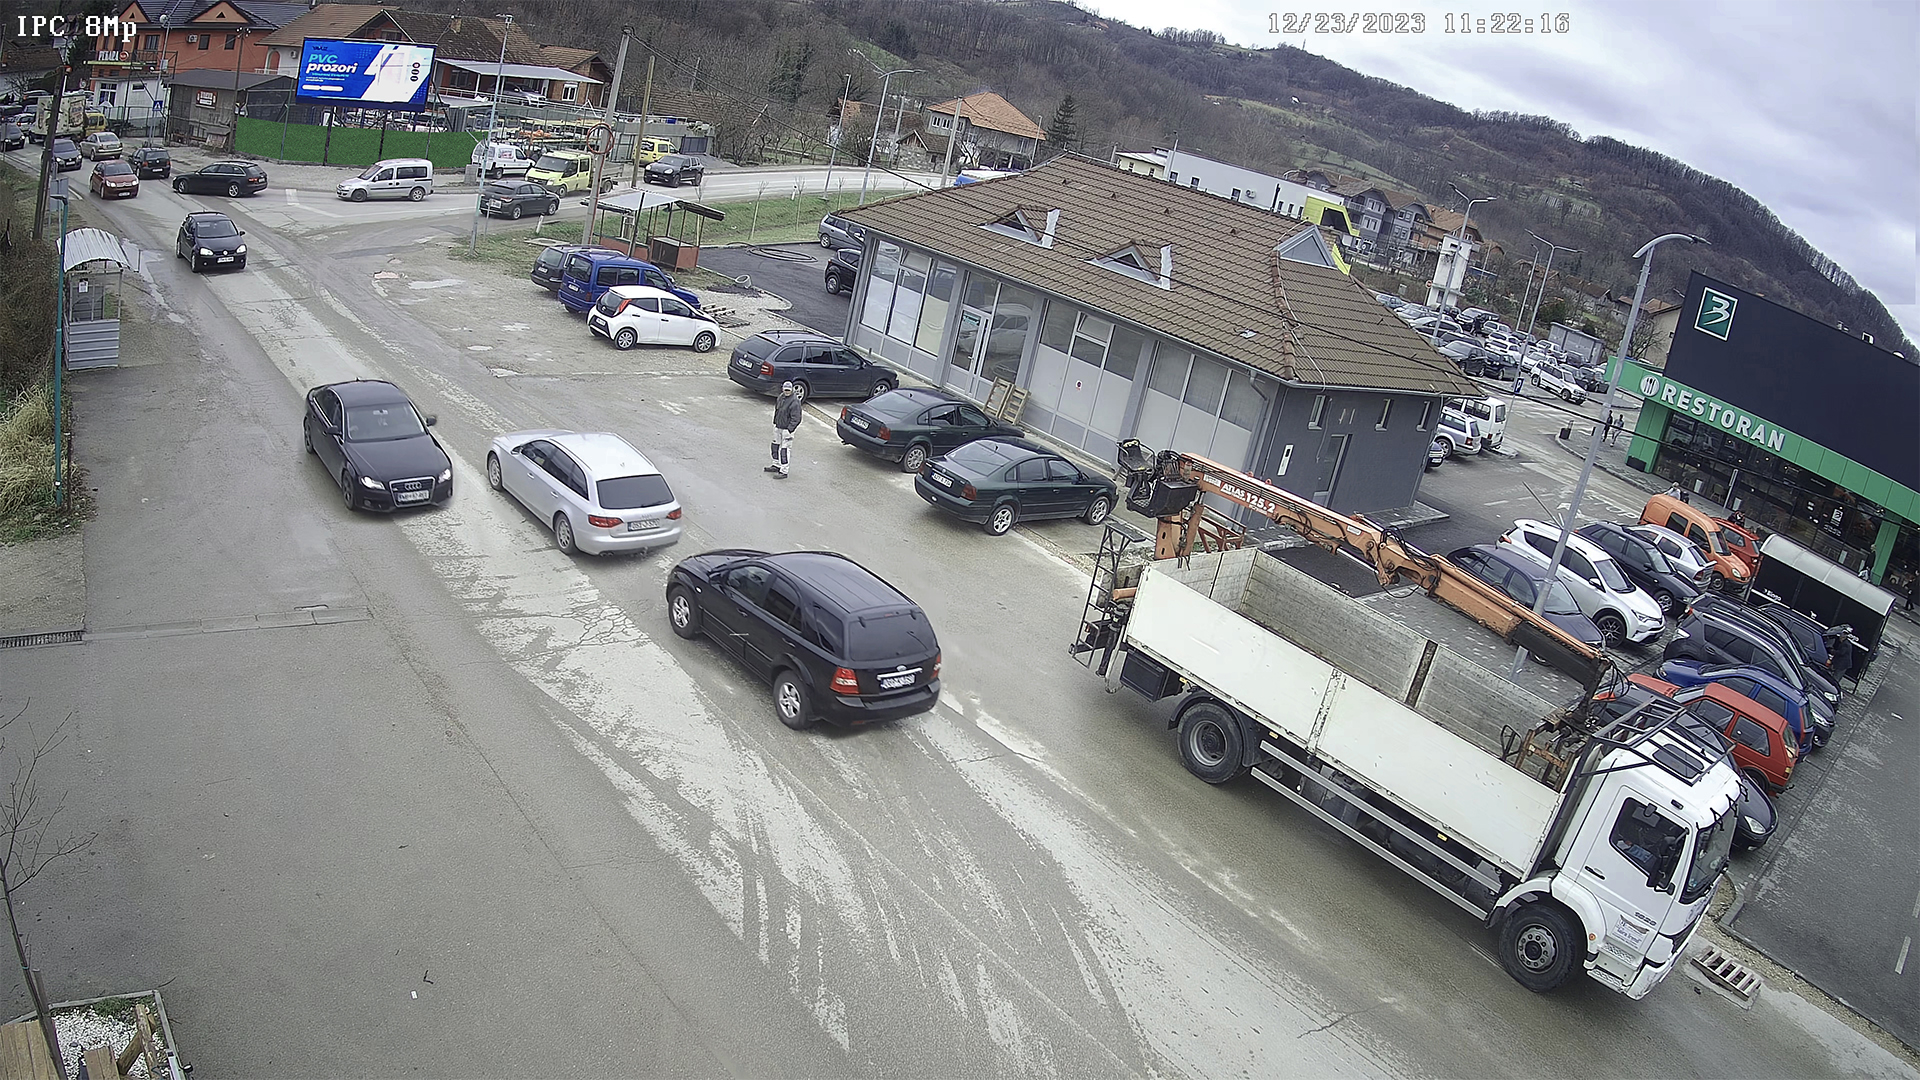 Glavna semaforska raskrsnica na ulazu u grad Srebrenik. Magistralni put Tuzla - Orašje odiše kvalitetnim prometom svaki dan. Reklama je upečatljiva sa velike udaljenosti zbog direktnog pogleda raskrsnice u vaš reklamni sadržaj.